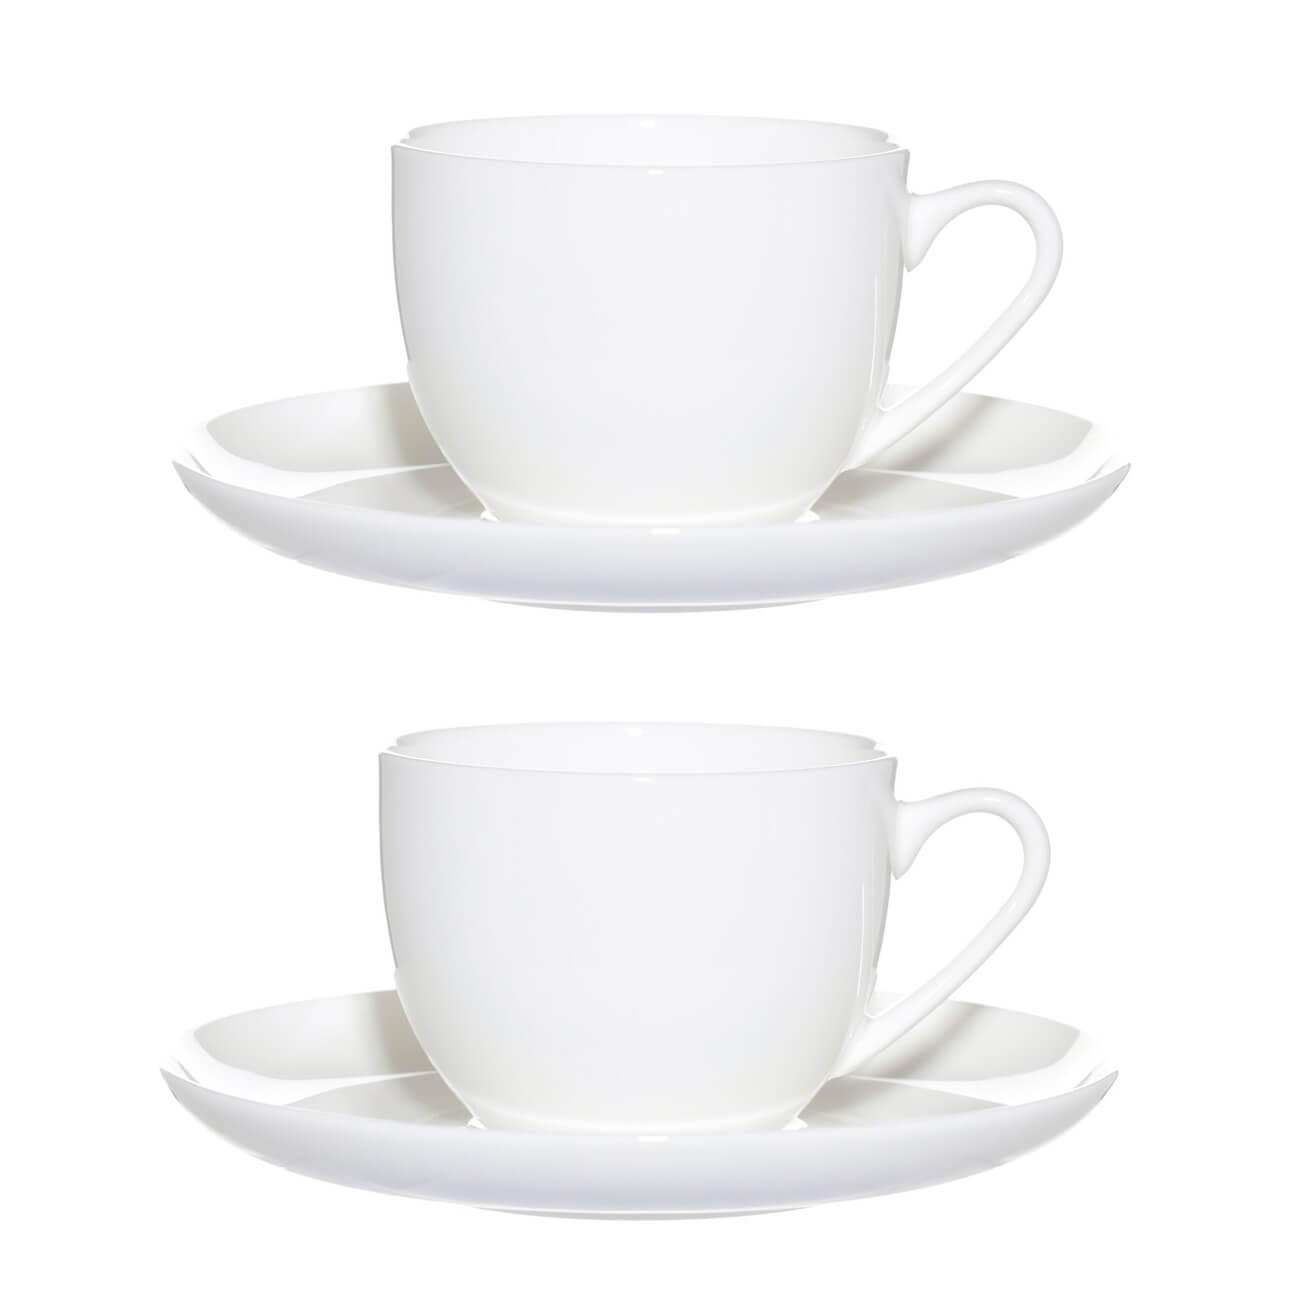 Пара чайная, 2 перс, 4 пр, 250 мл, фарфор F, белая, Ideal white пара кофейная 2 перс 4 пр 90 мл фарфор f antarctica